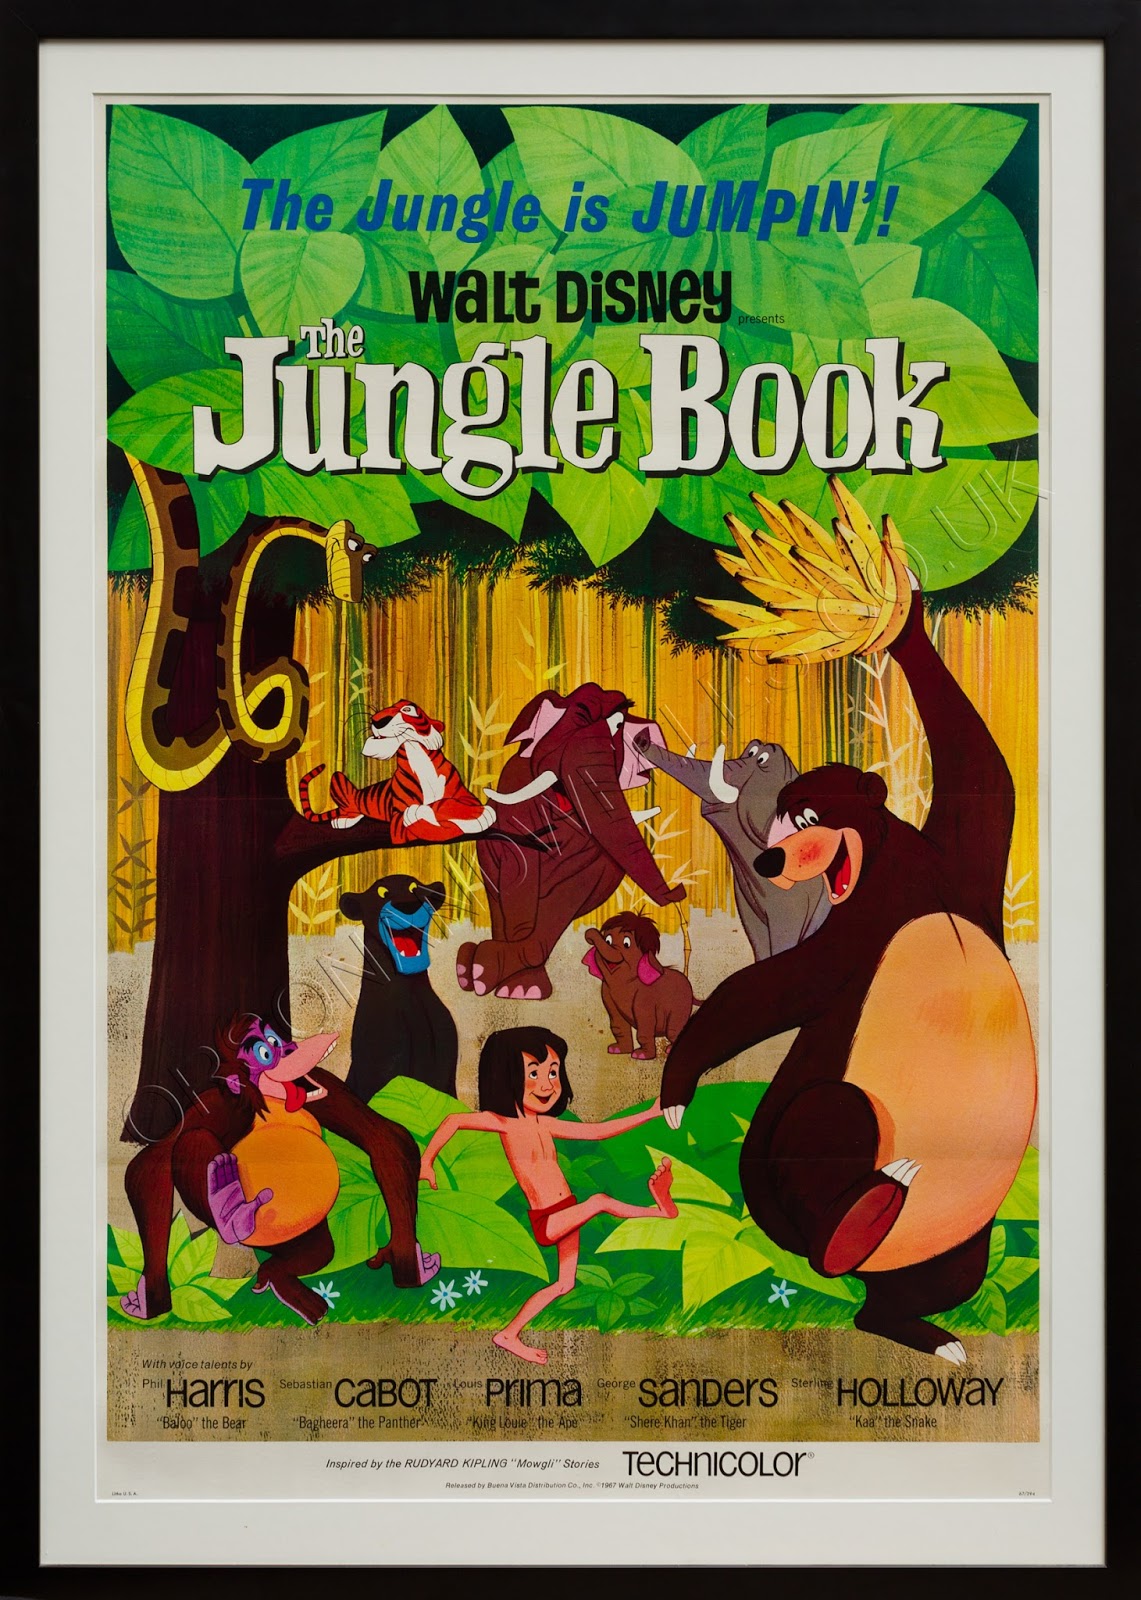 ディズニー映画 感想 ジャングル ブック 実写版と180度異なるラストは物凄いあっさり 暗闇の懐中電灯